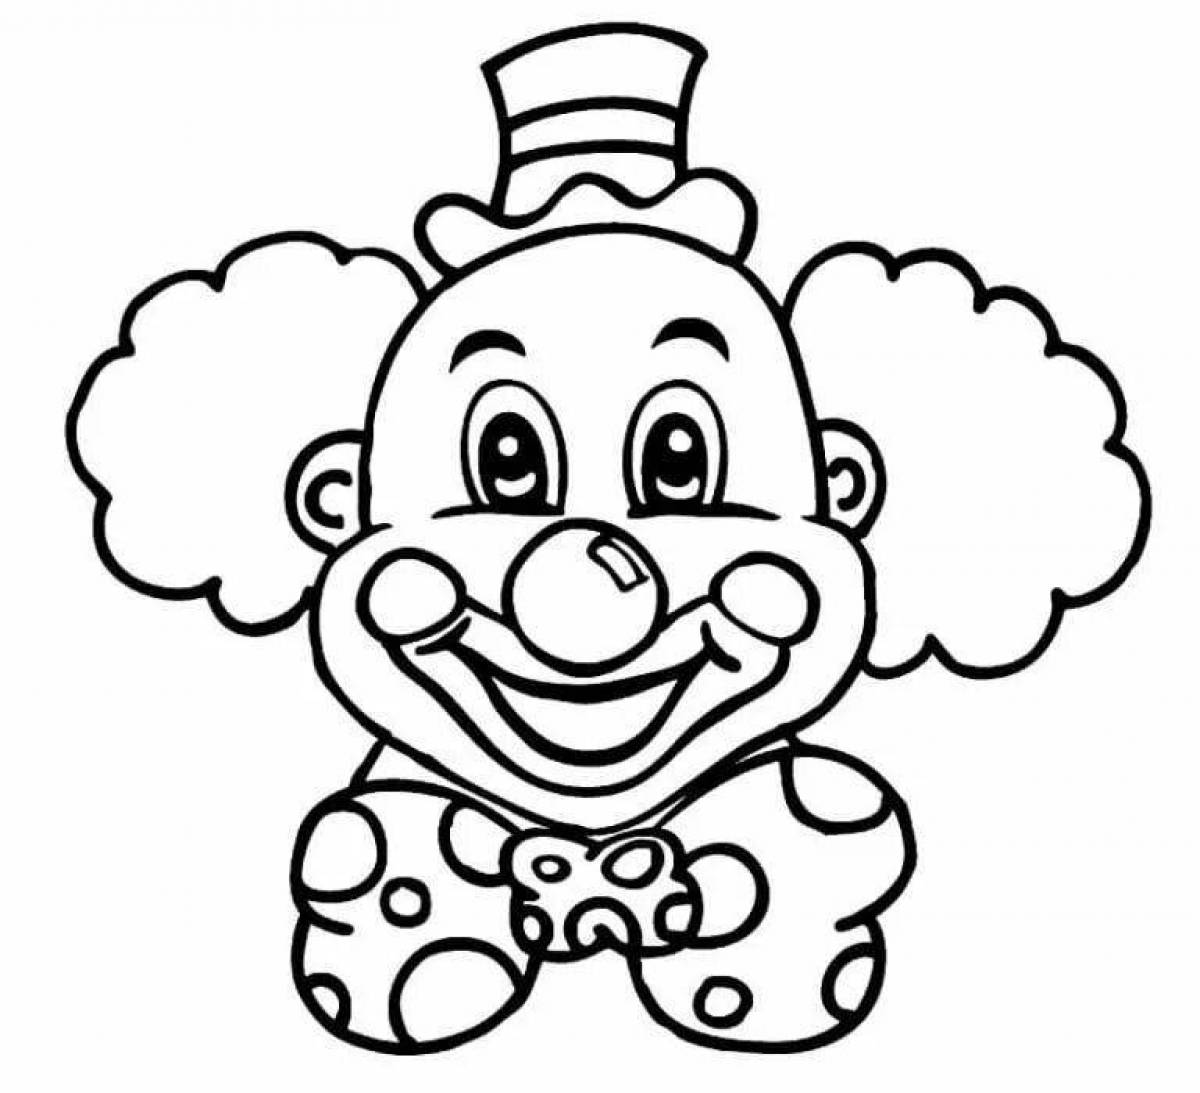 Лицо клоуна раскраски для детей